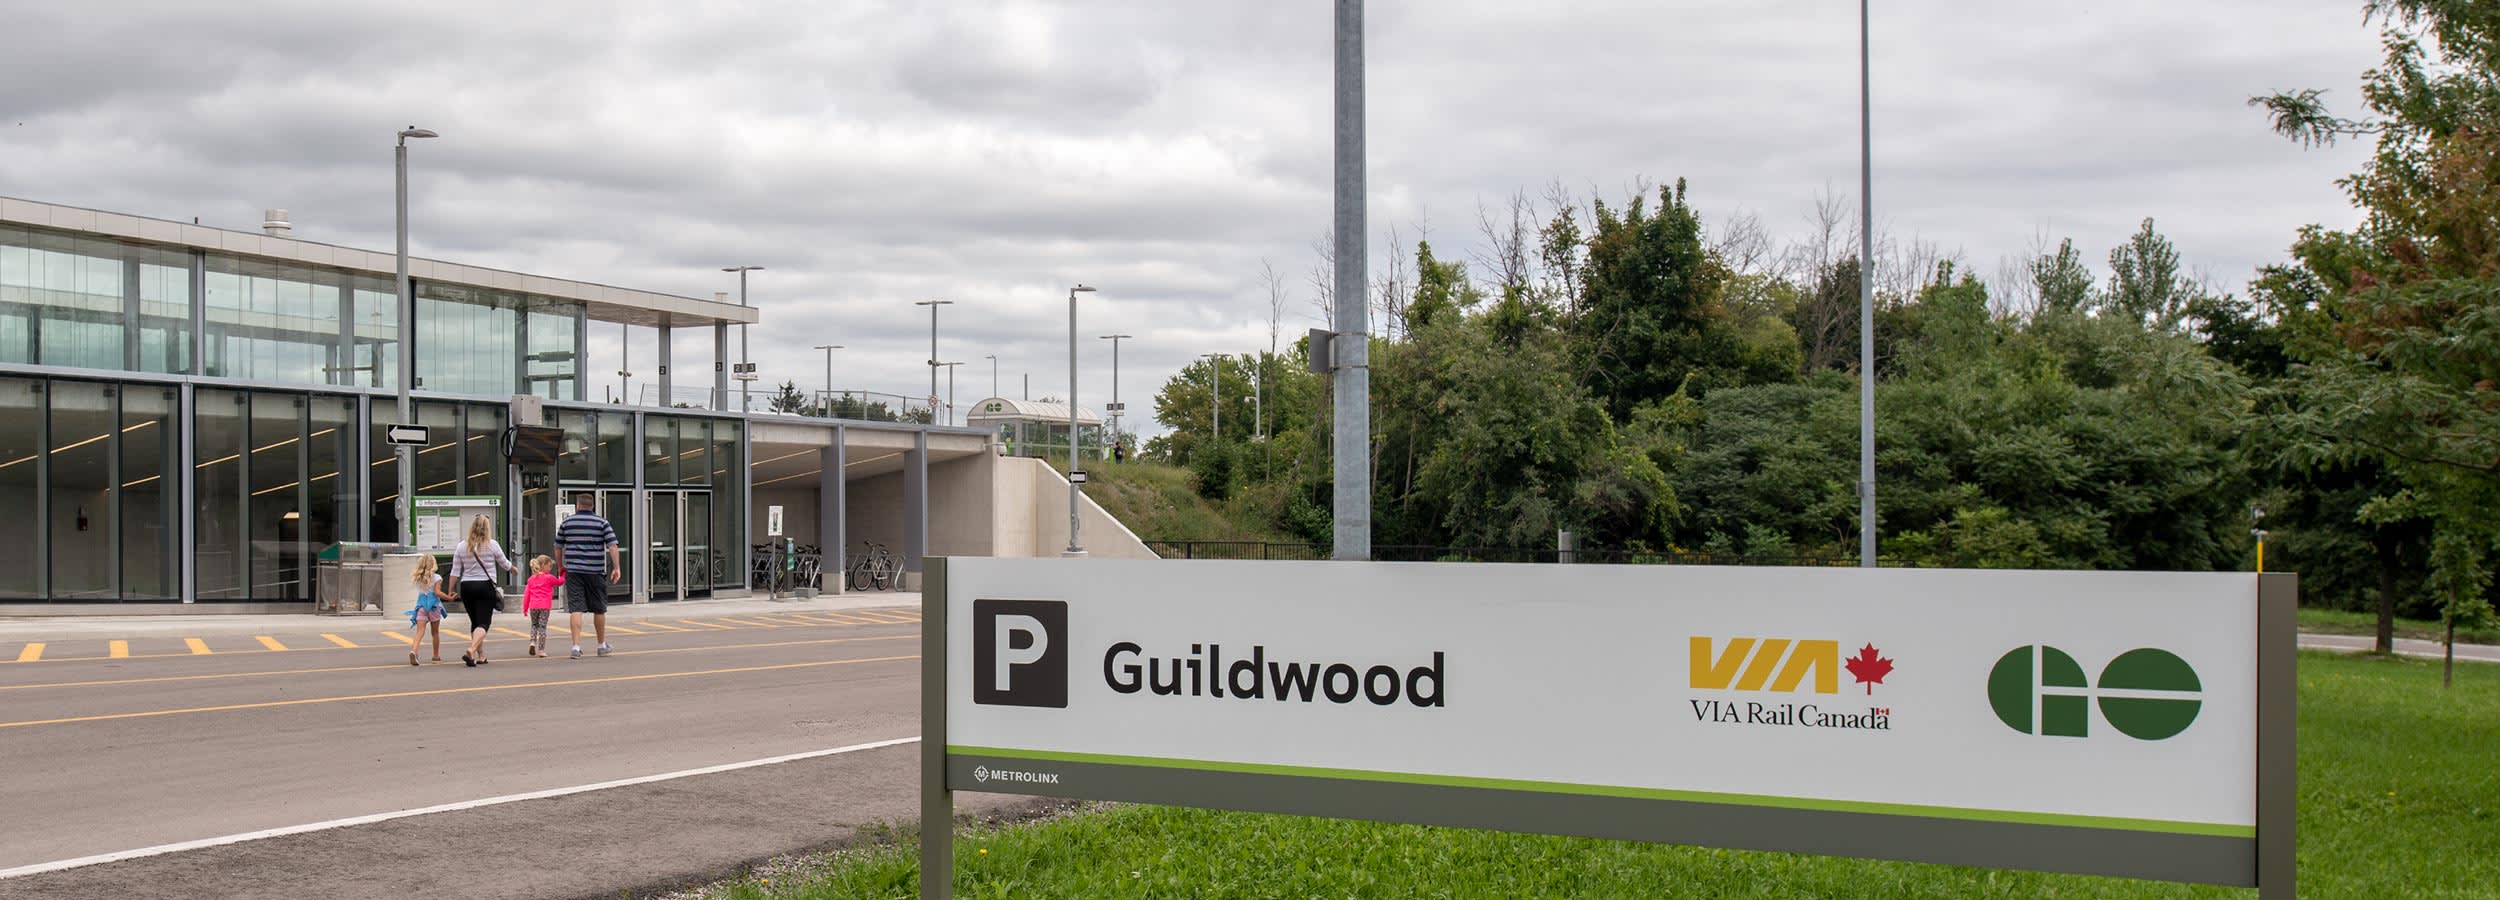 Guildwood GO